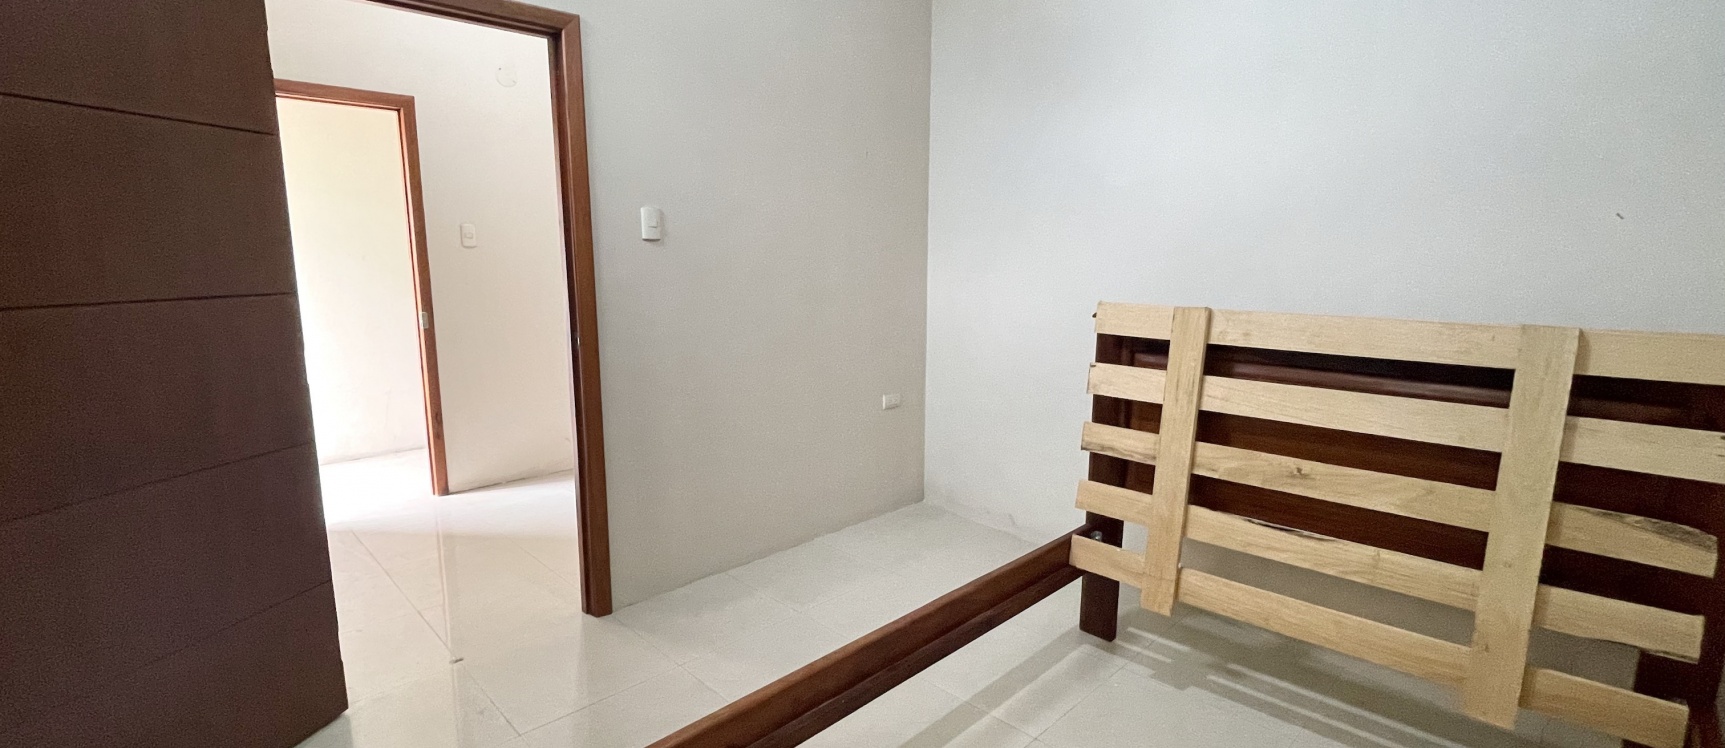 GeoBienes - Suite en alquiler en la ciudad de Machala - Plusvalia Guayaquil Casas de venta y alquiler Inmobiliaria Ecuador